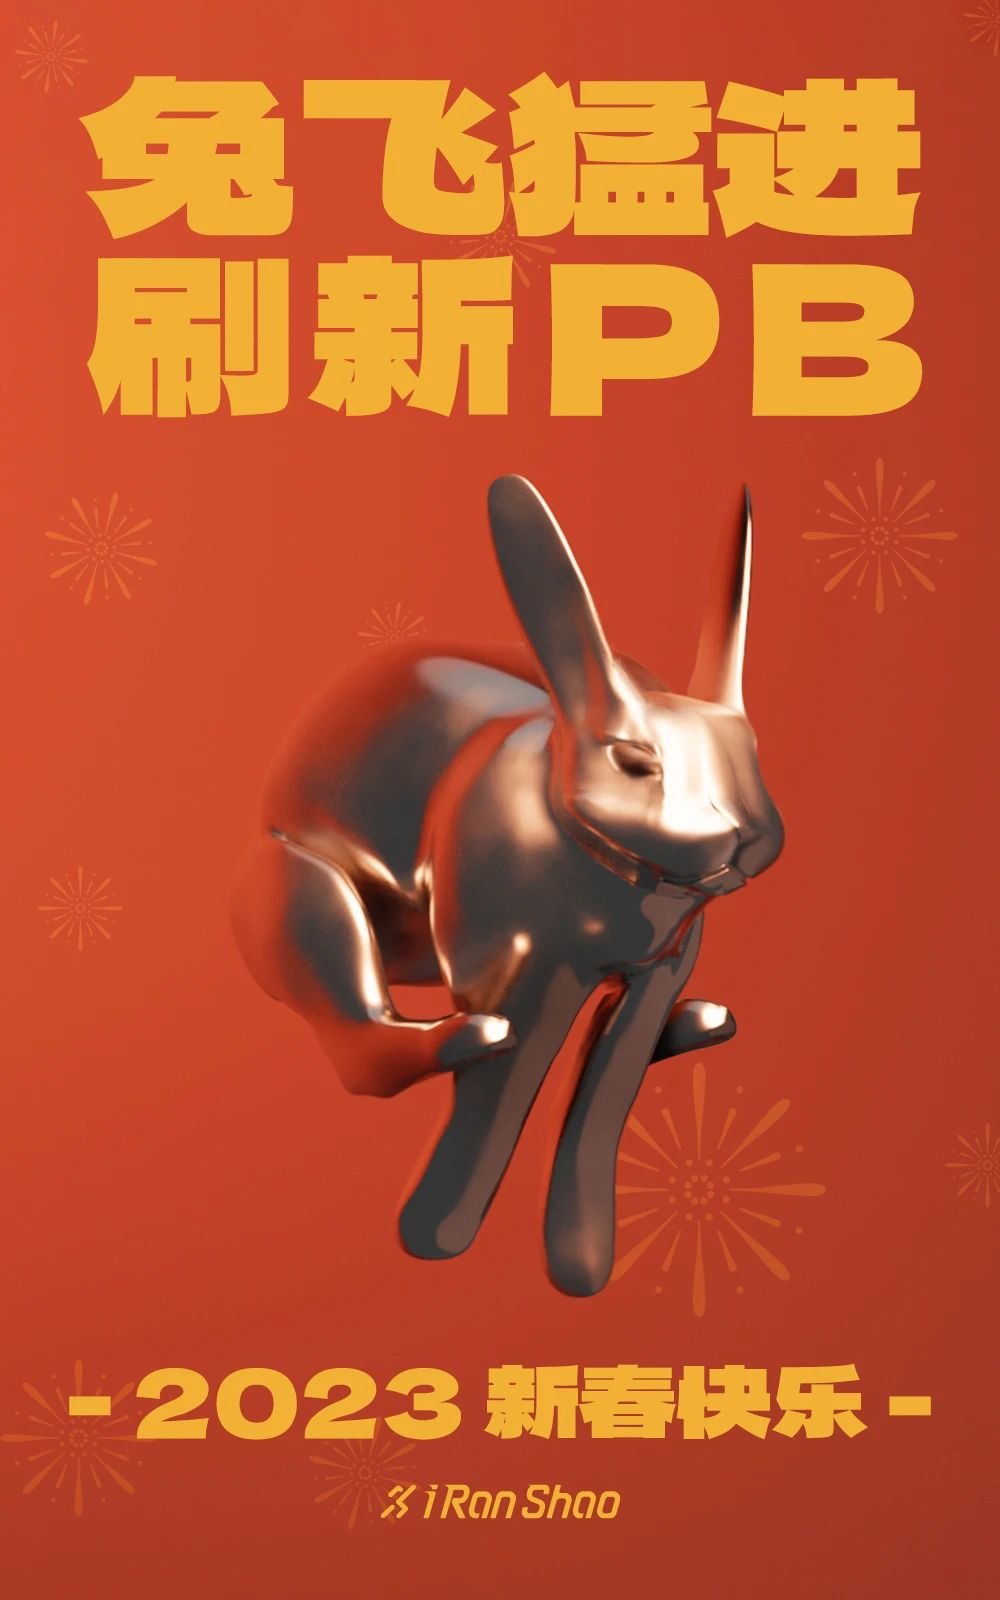 兔飞猛进 新年PB